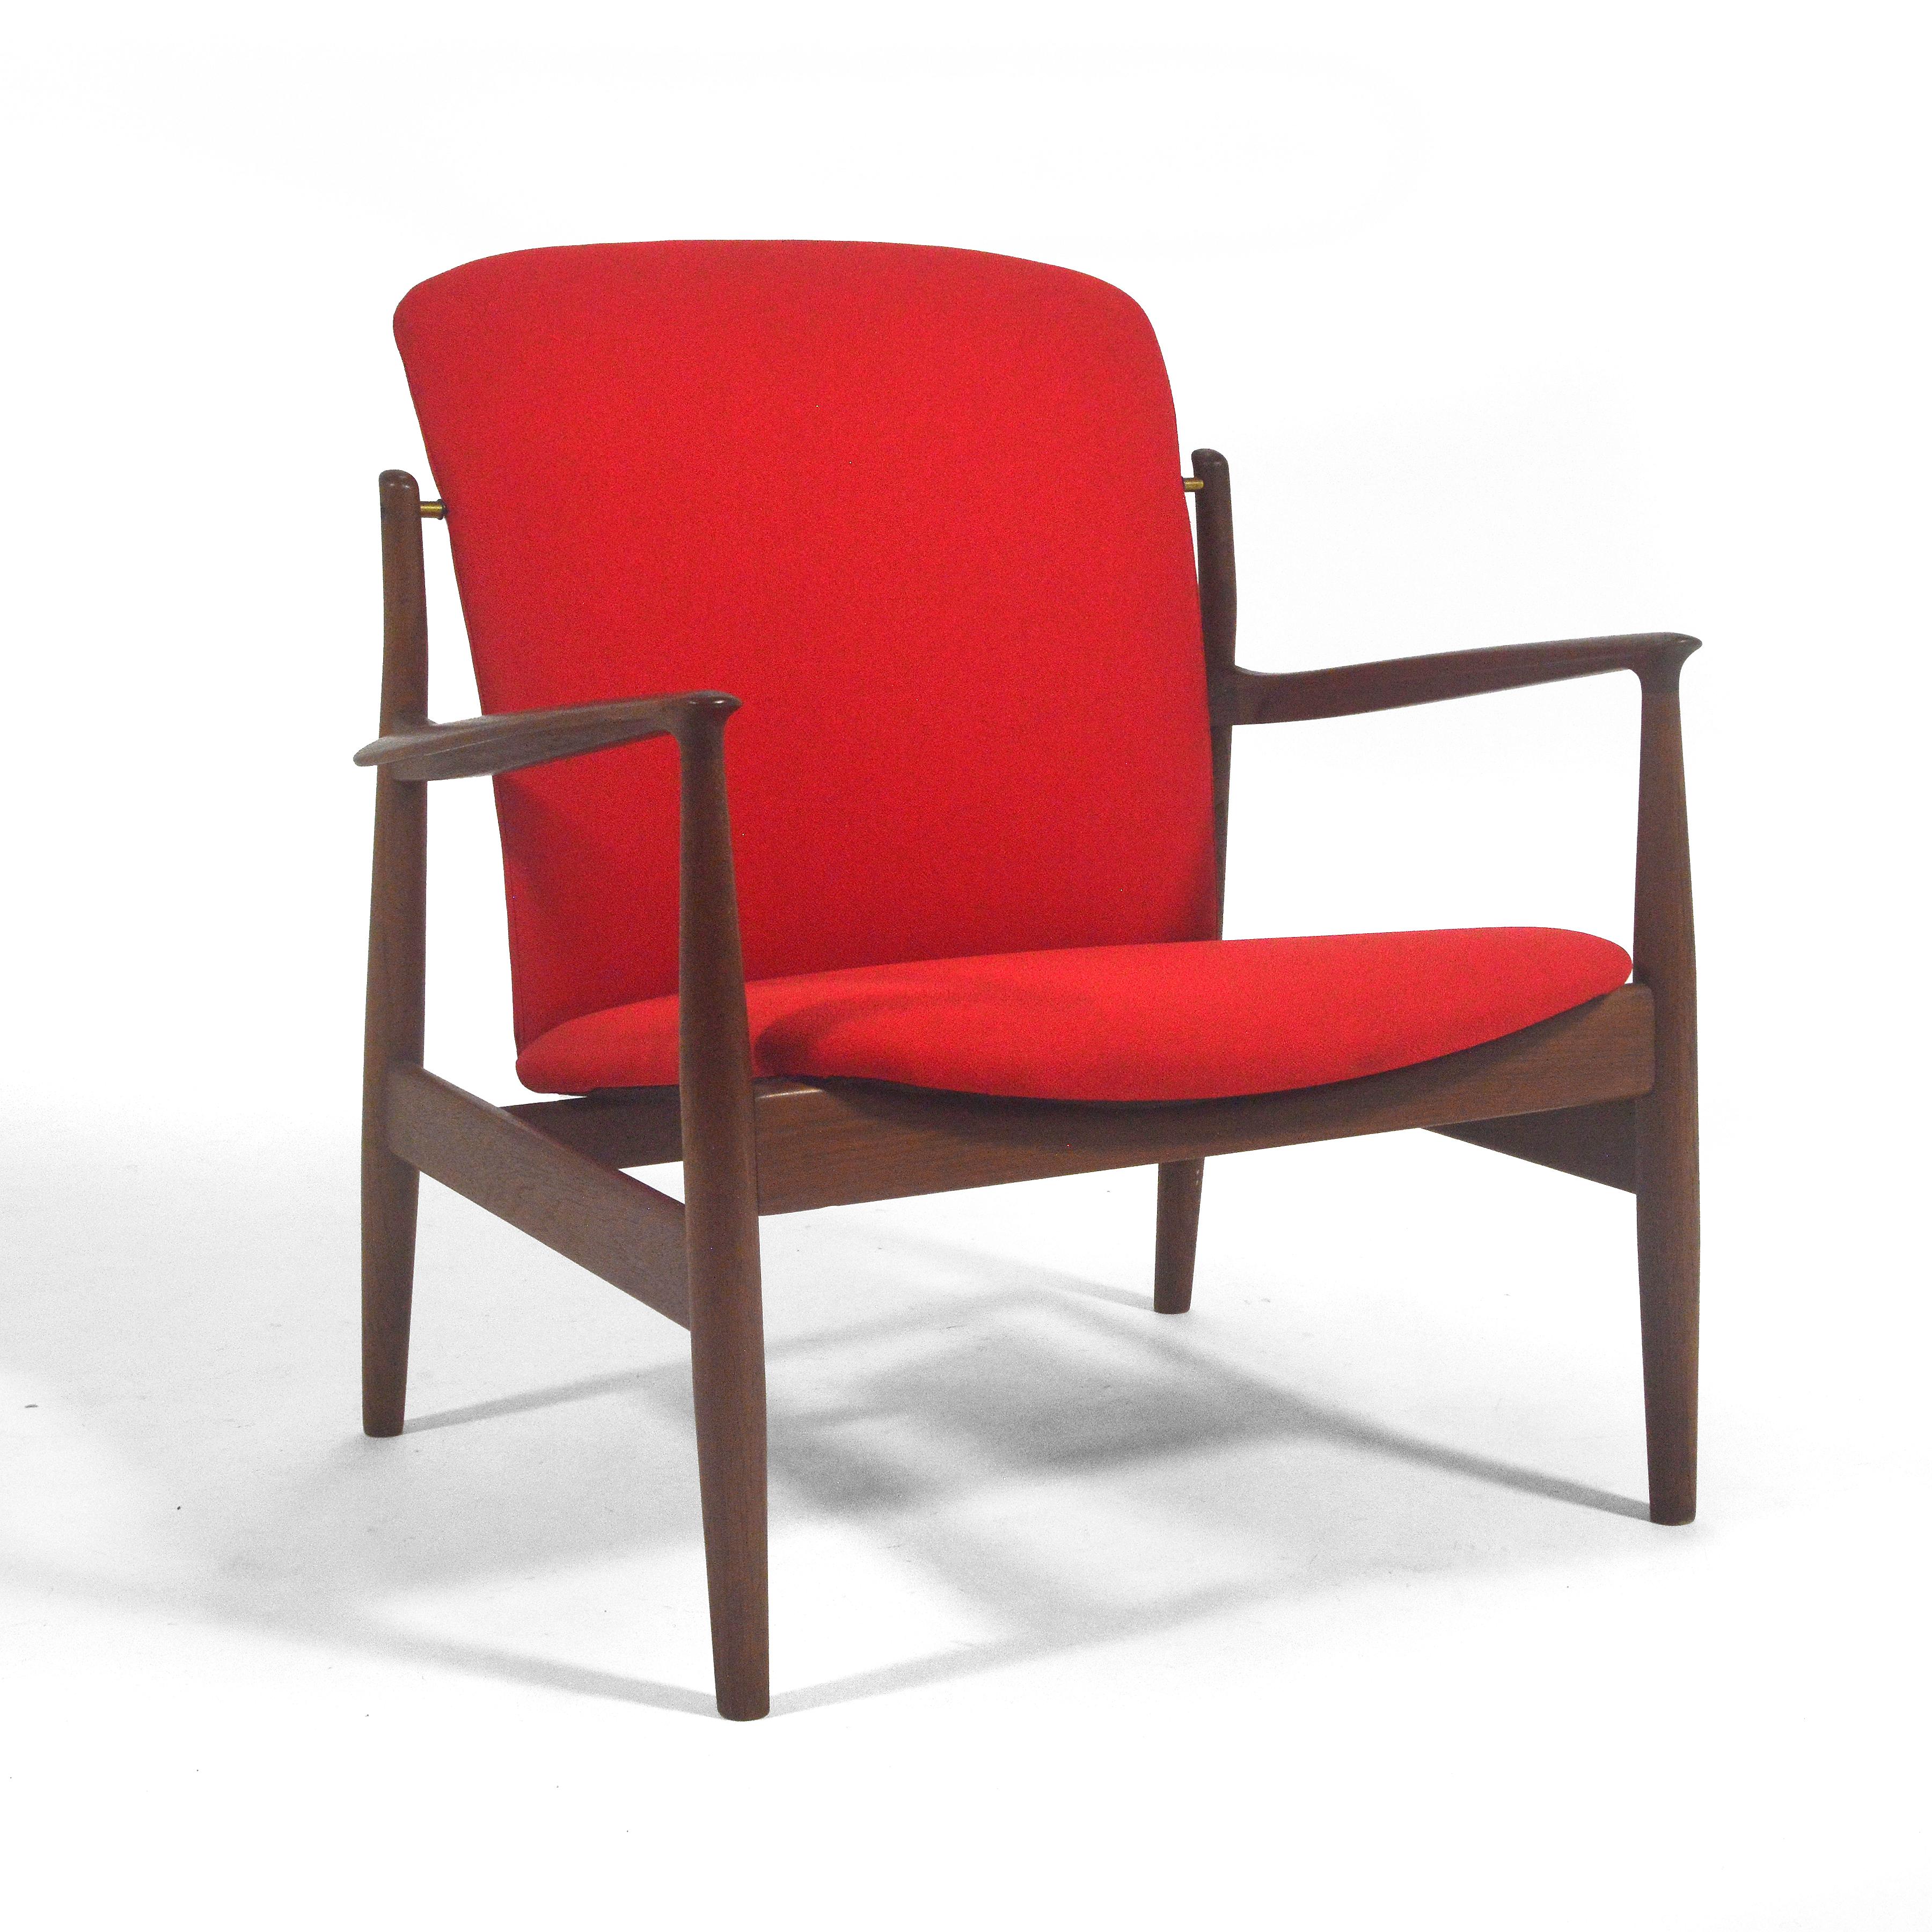 Dieser hübsche Sessel von Finn Juhl für France & Sons ist ein seltenes Modell fd141. Er hat die gleichen Eigenschaften wie viele seiner berühmten Stühle, darunter der Chieftain, der Stuhl #45 und der Delegate's Chair. Der dunkle, reiche